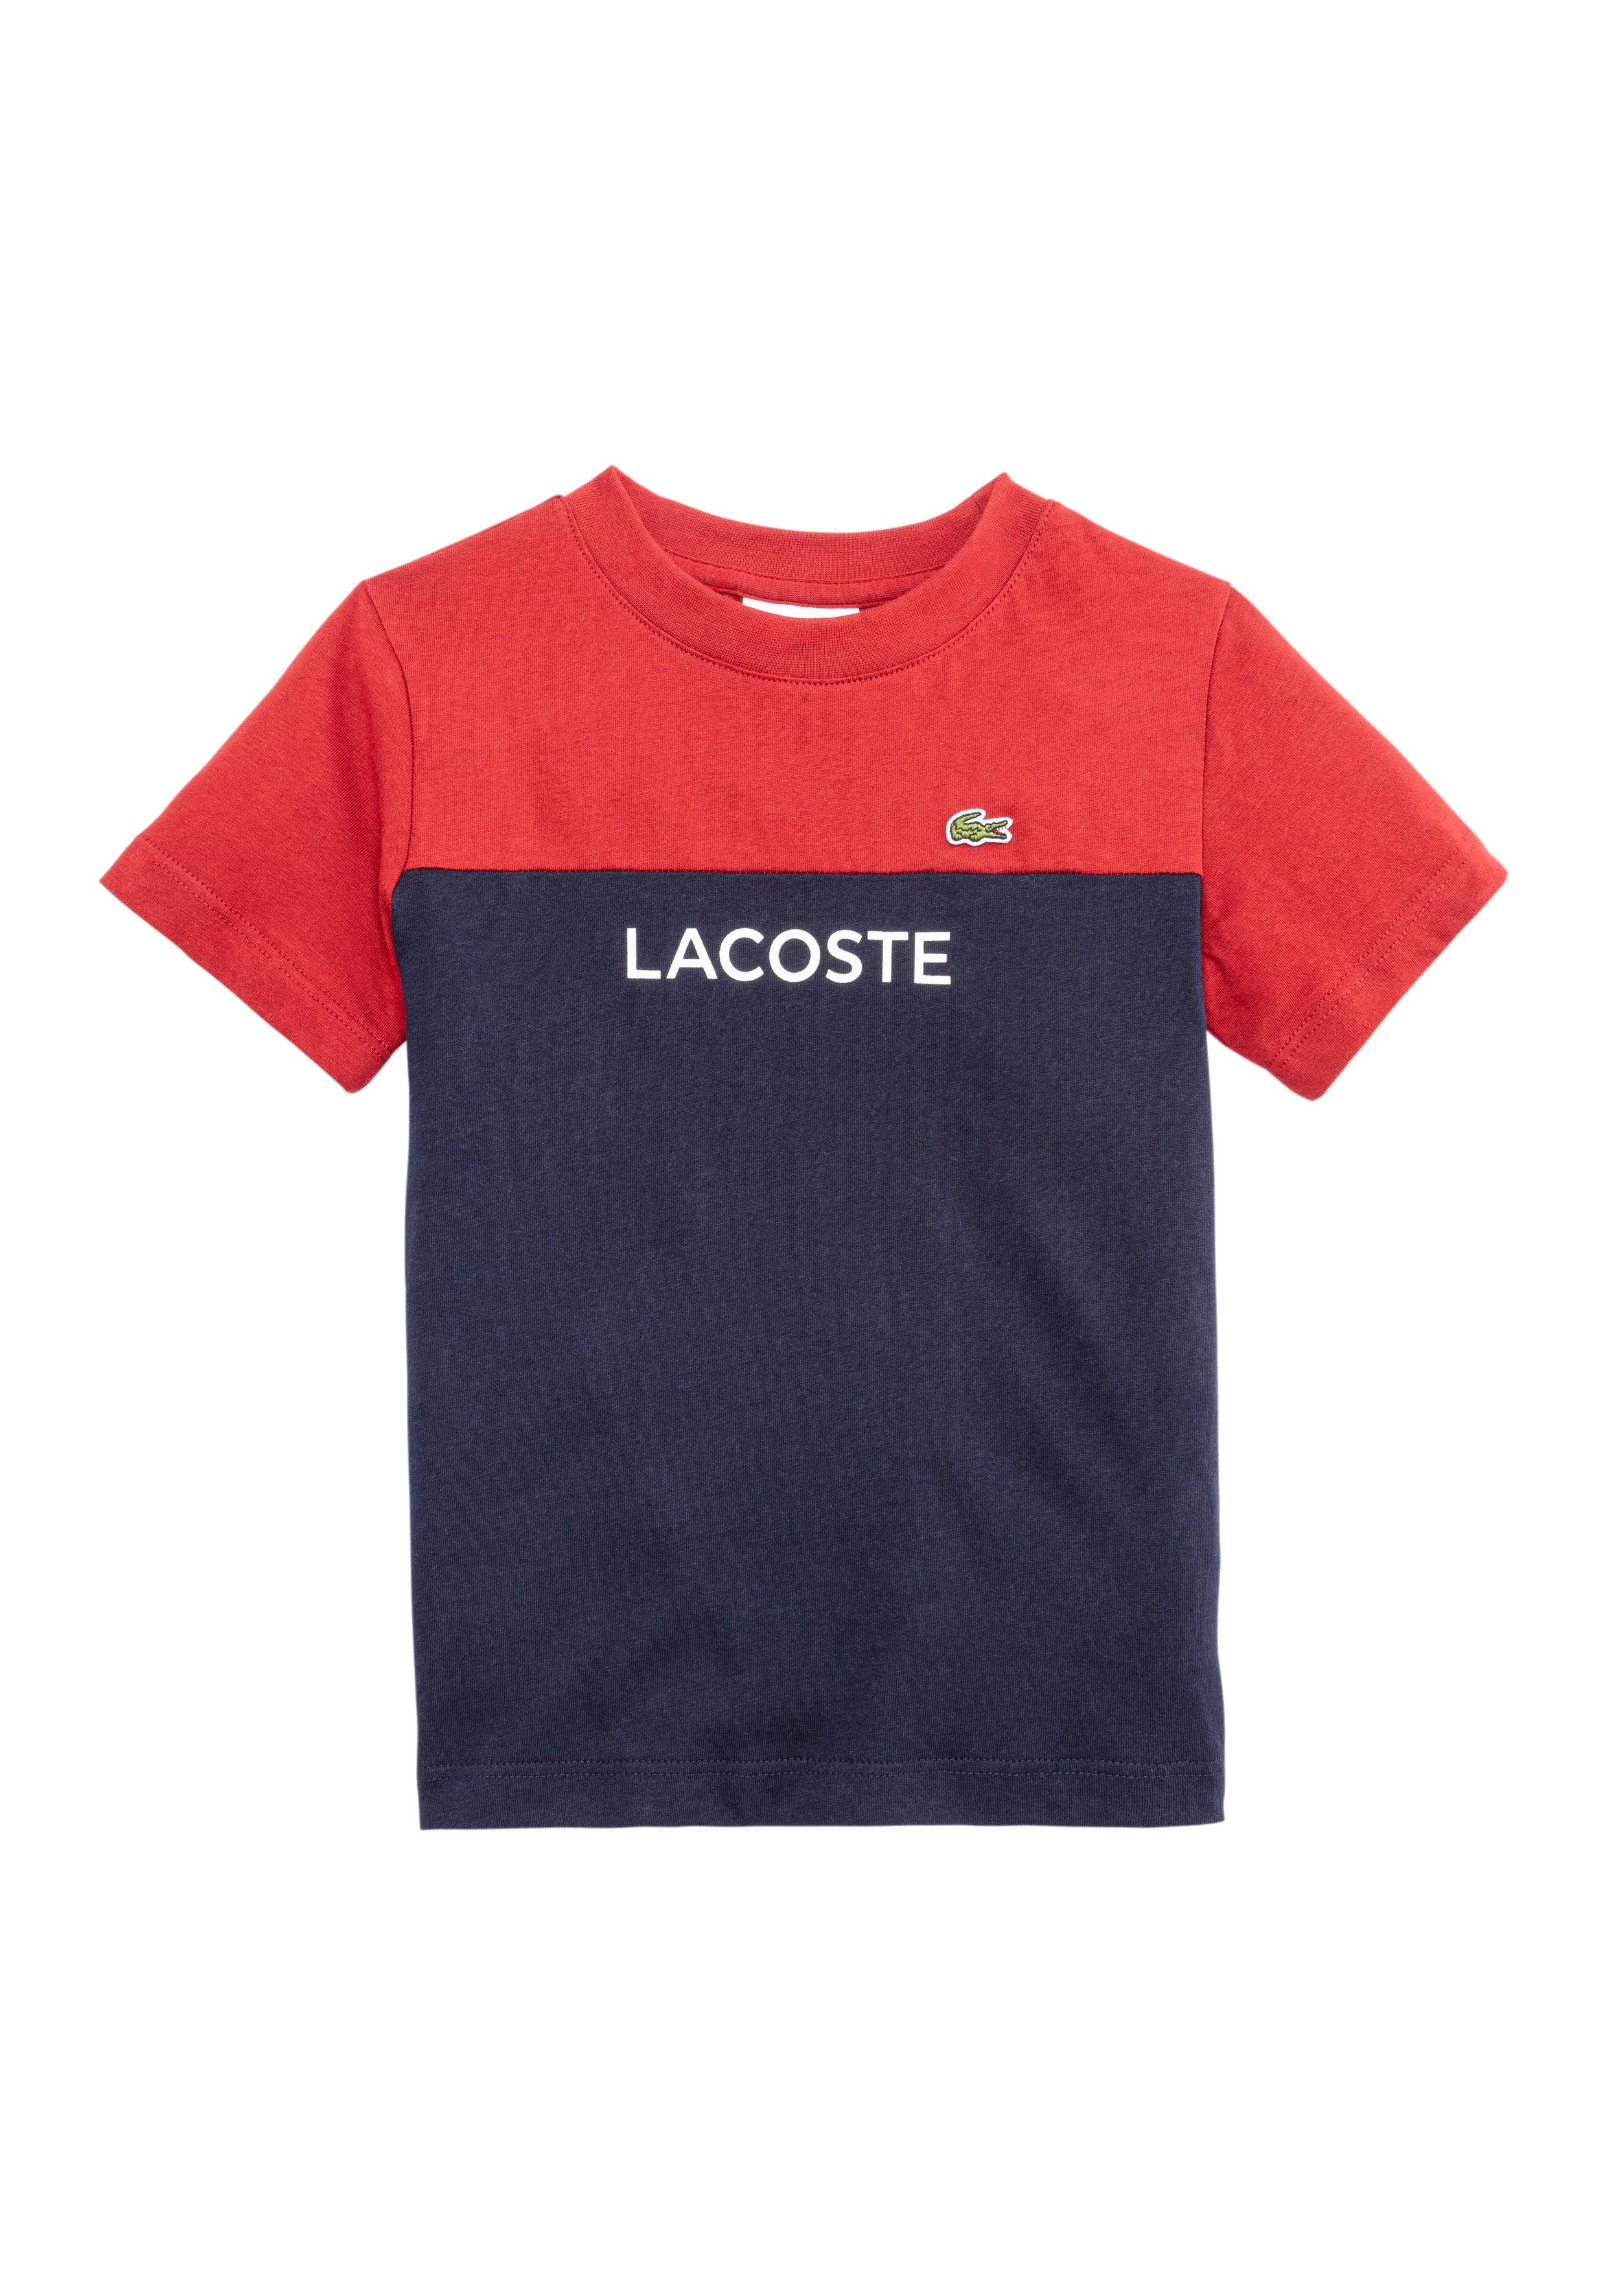 Lacoste Colour Block T-Shirt Children Red